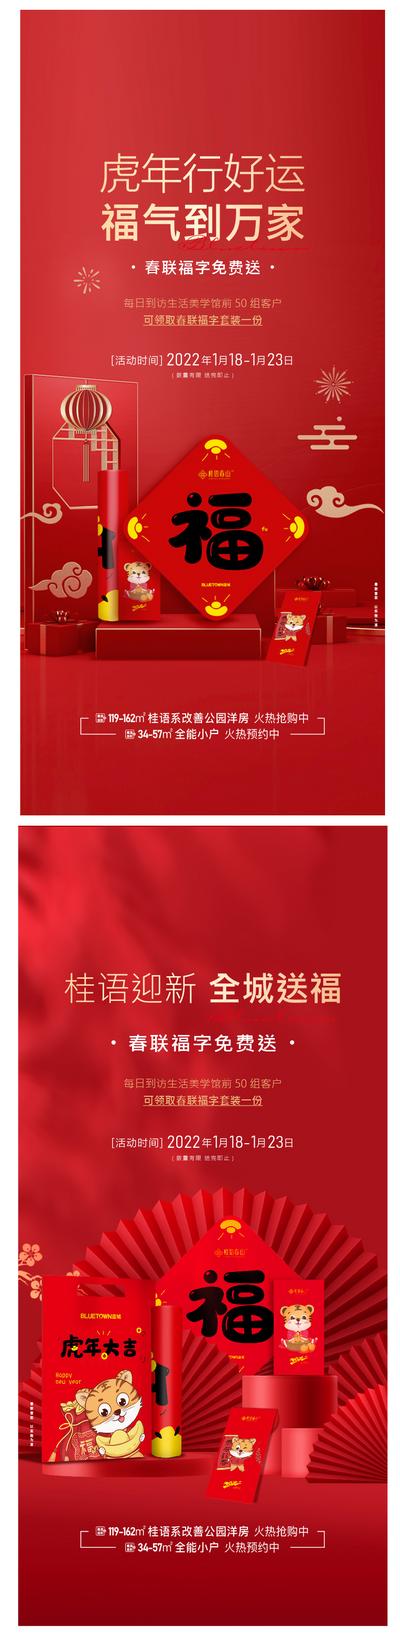 南门网 广告 海报 虎年 新年 活动 春联 礼品 虎年 系列 活动 红金